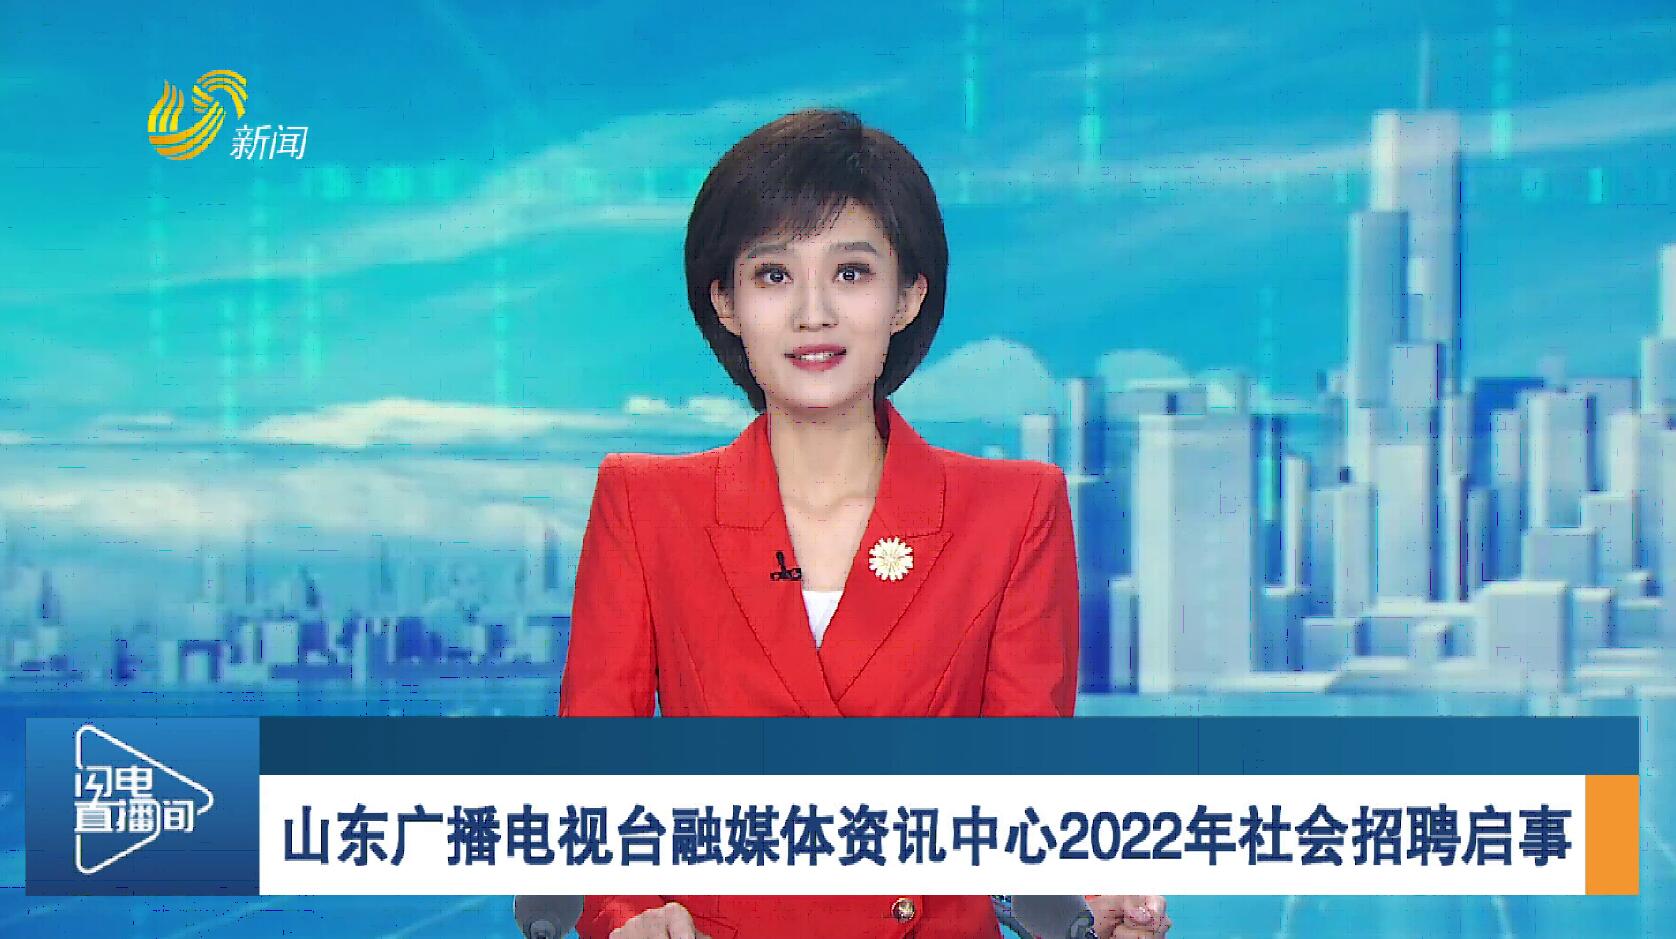 山东广播电视台融媒体资讯中心2022年社会招聘启事